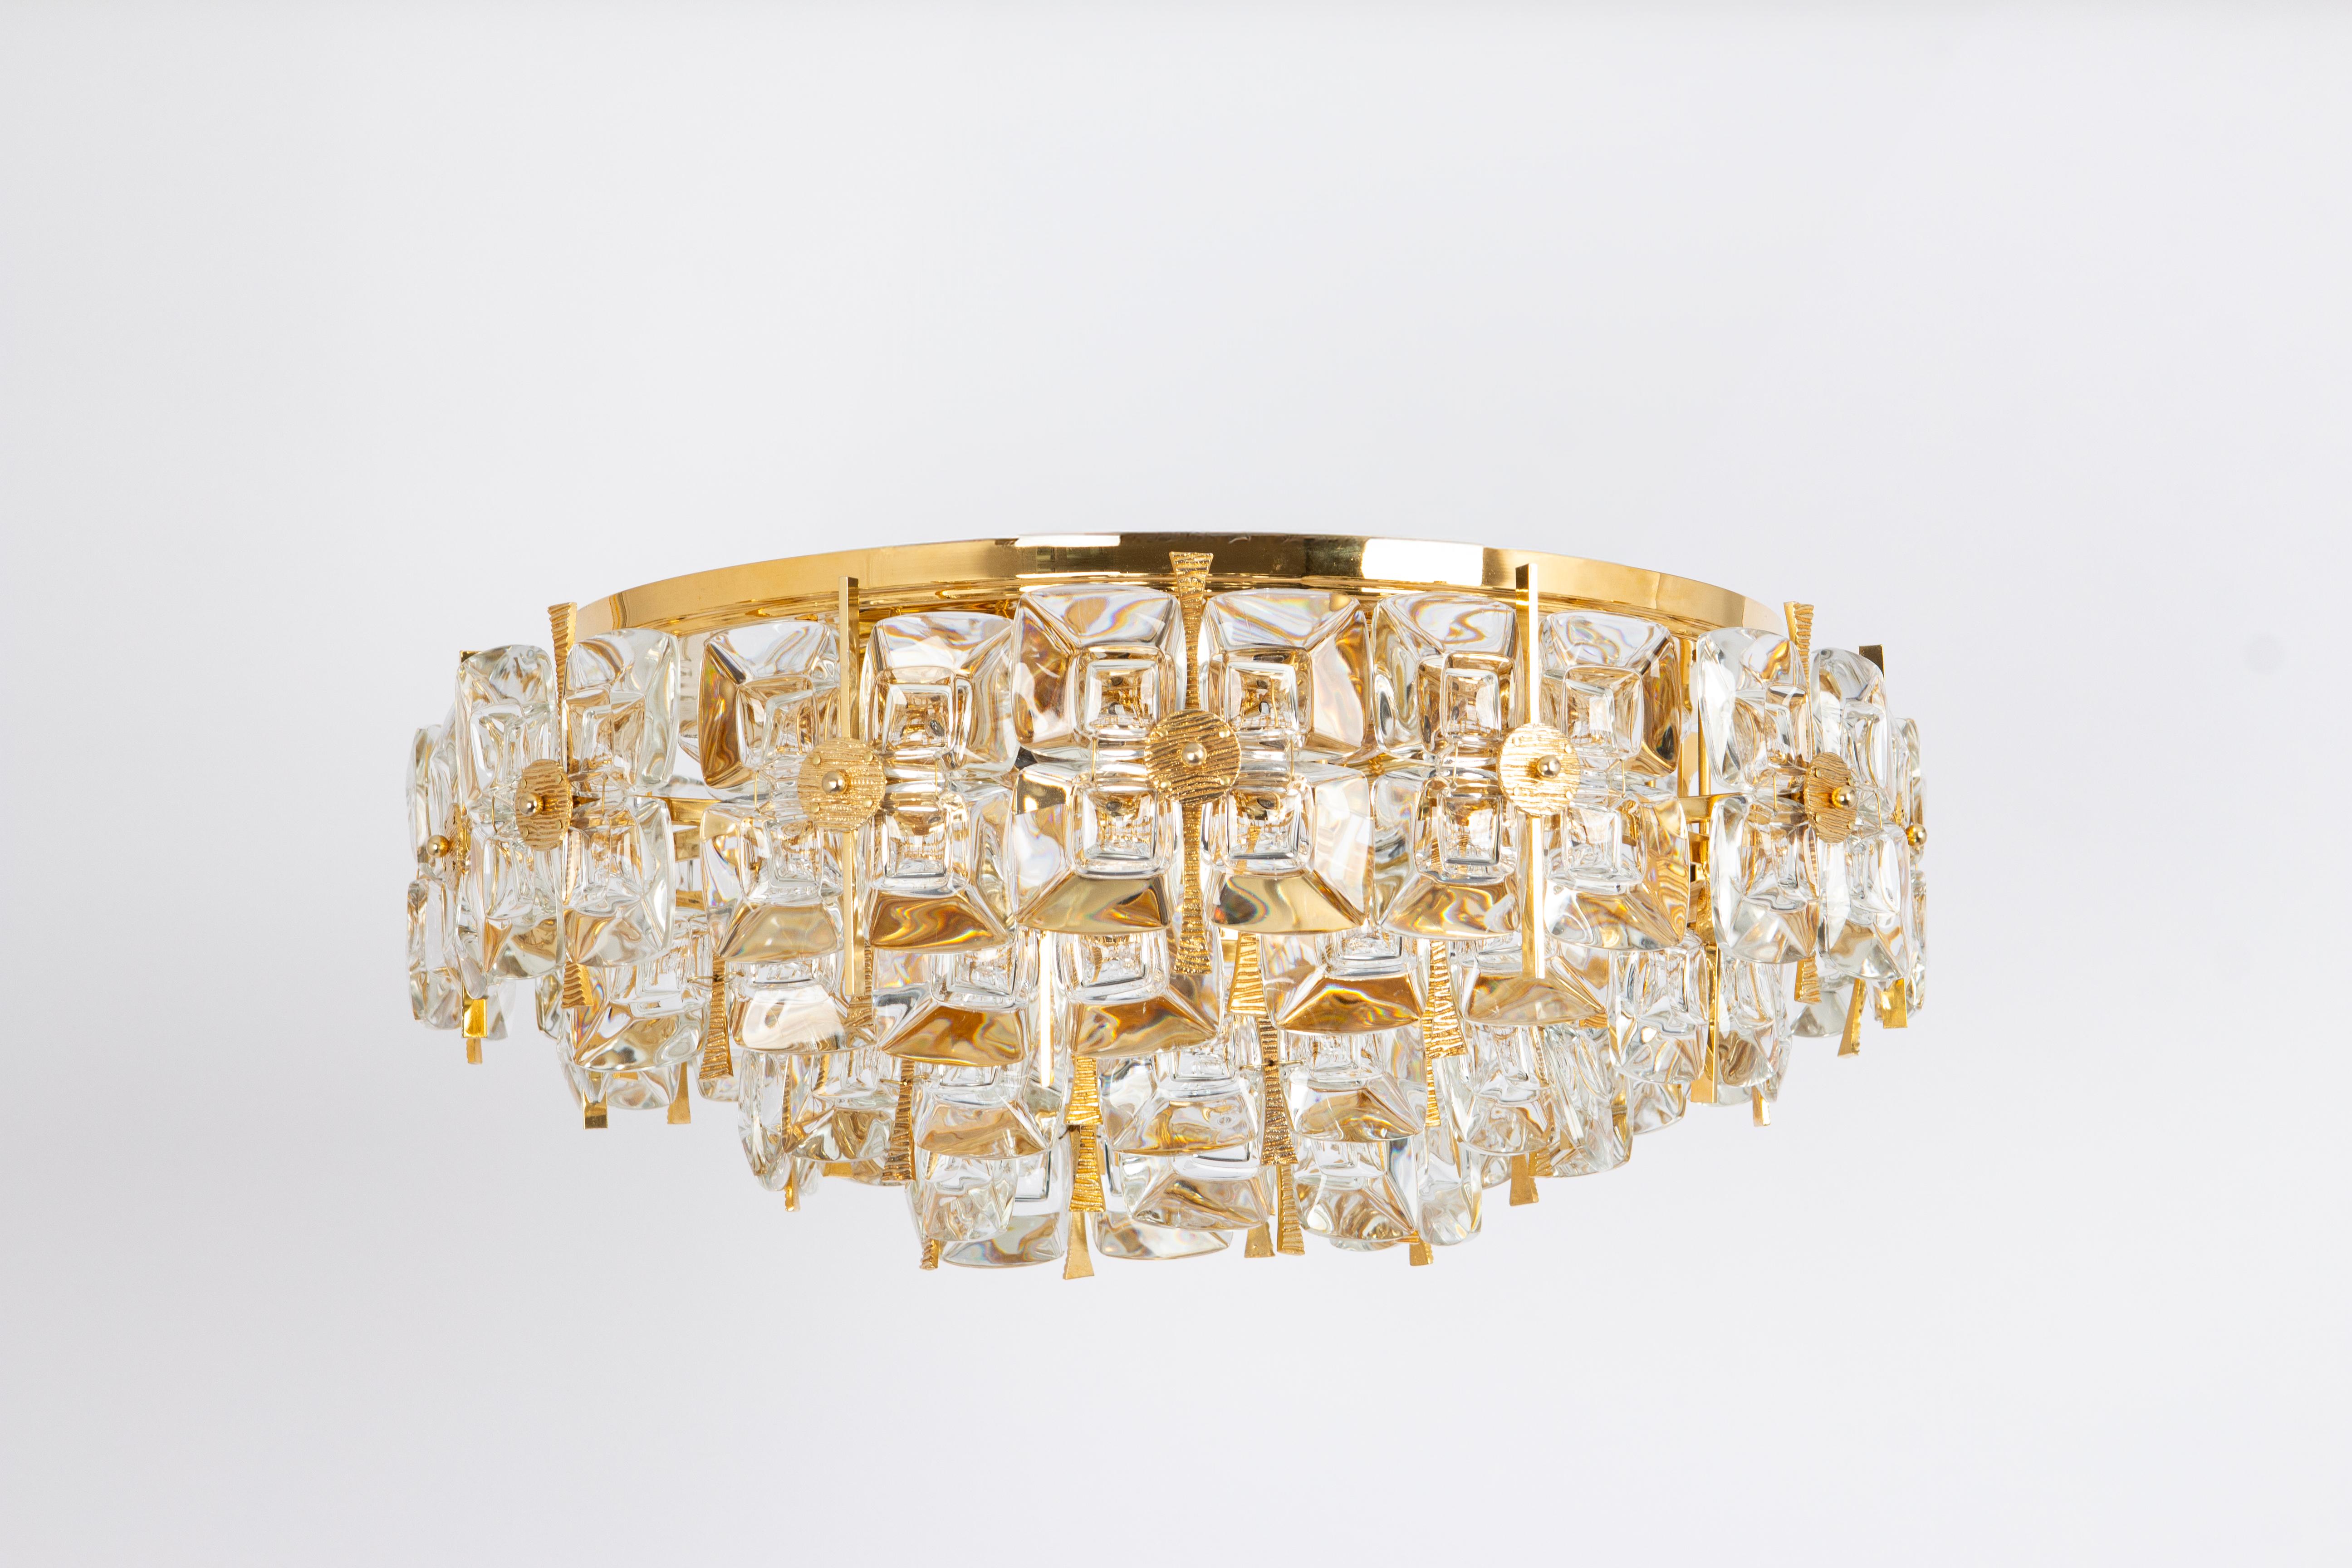 Magnifique lustre ou suspension doré de grande qualité de Palwa, Allemagne, années 1970.
Il est composé d'une monture en laiton plaqué or 24 carats, ornée de cristaux individuels semblables à des bijoux. Un grand nombre de cristaux. Grande échelle